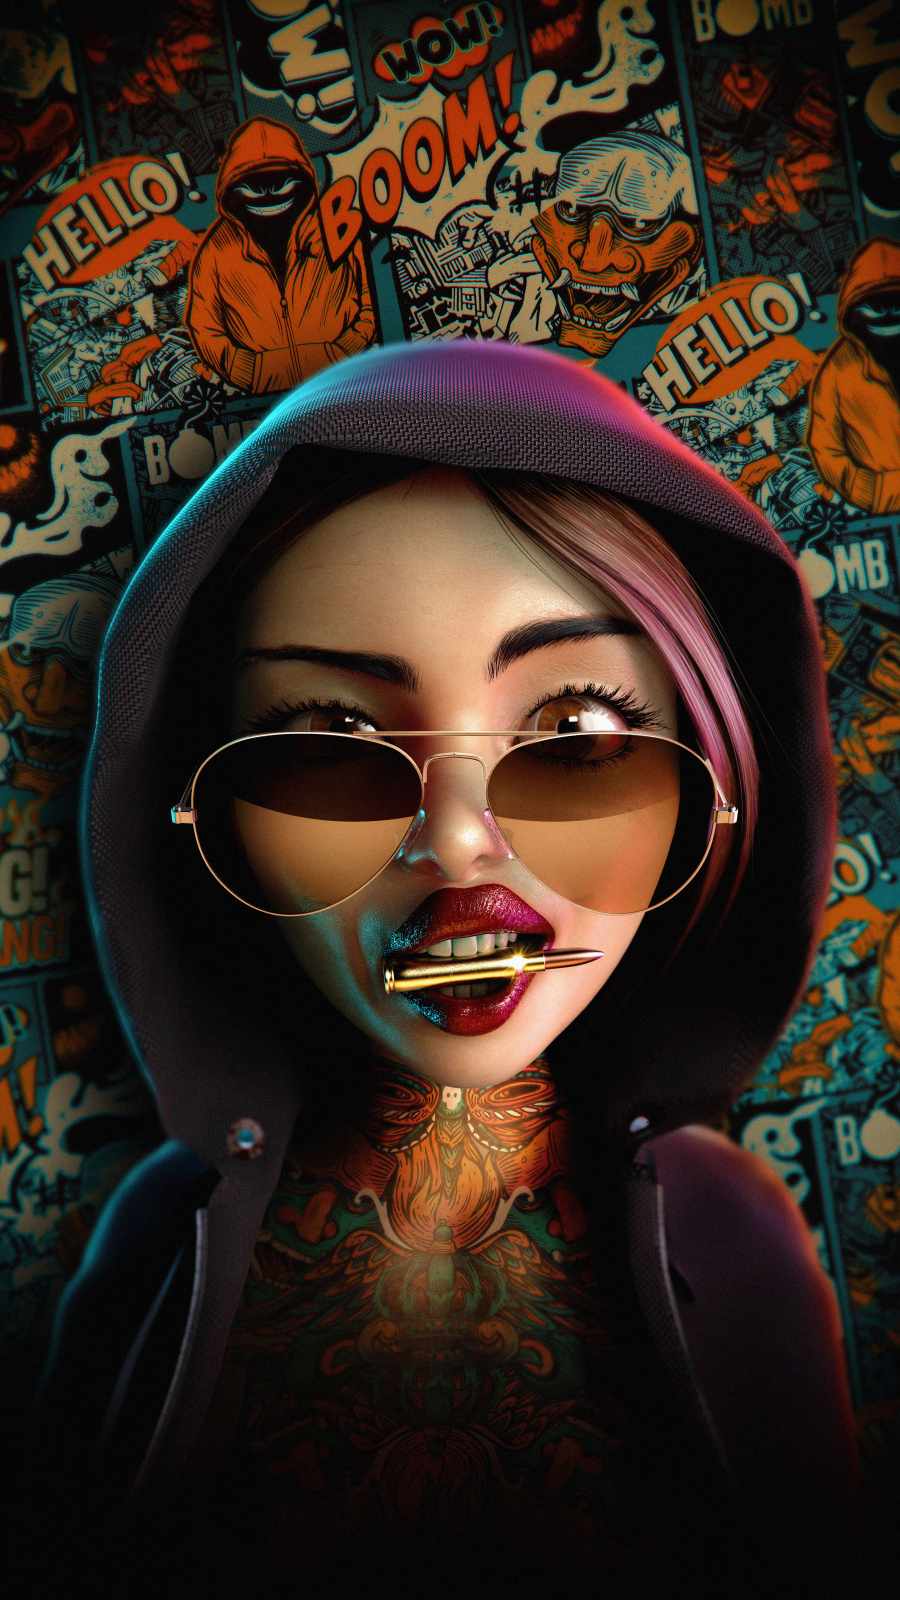 Gangster Girl HD IPhone Wallpaper